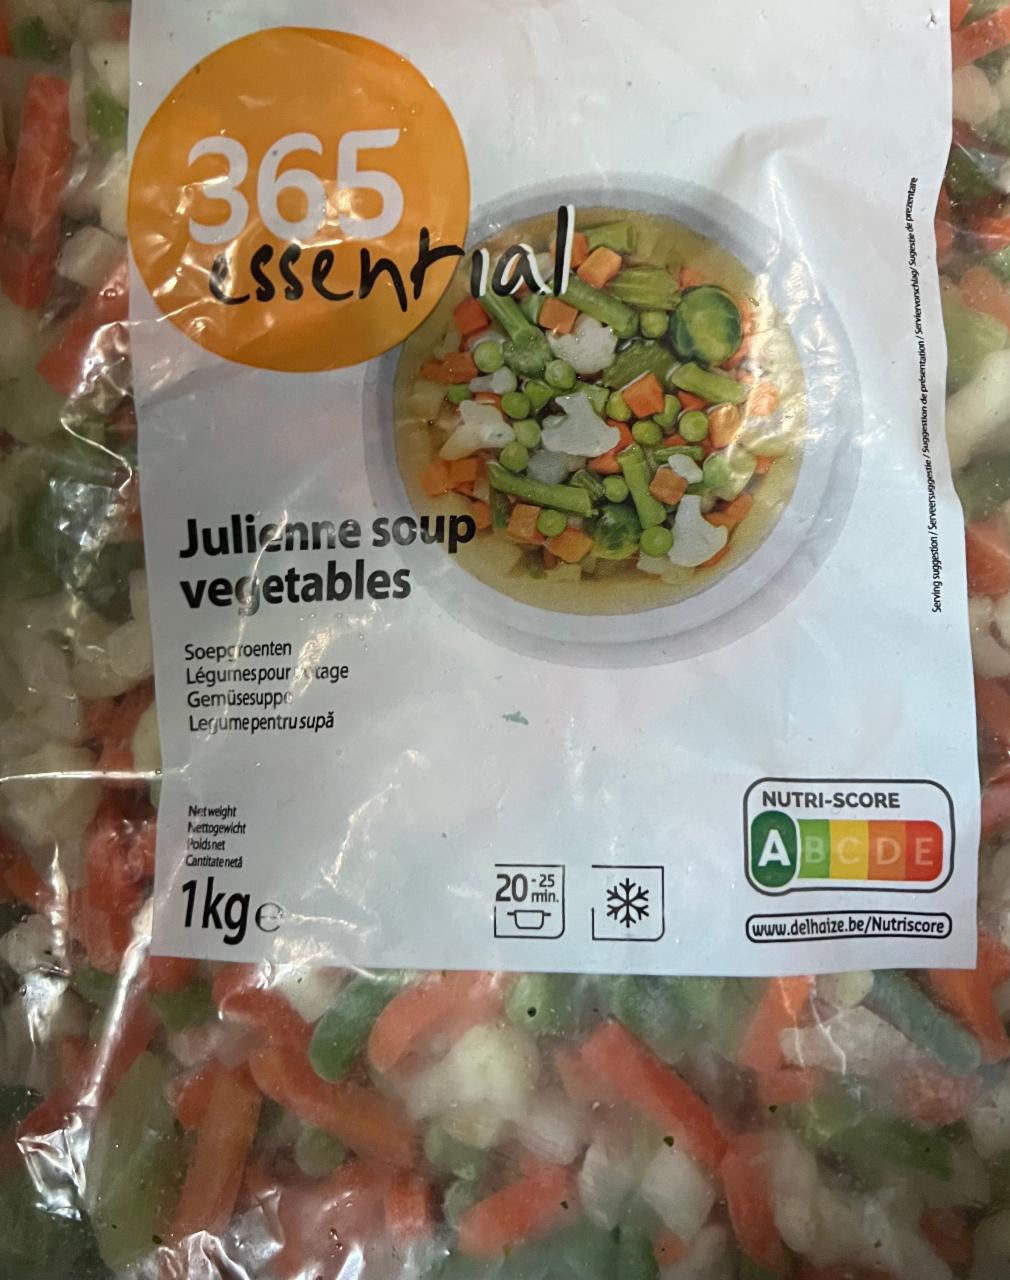 Fotografie - Julienne Soup Vegetables 365 essential